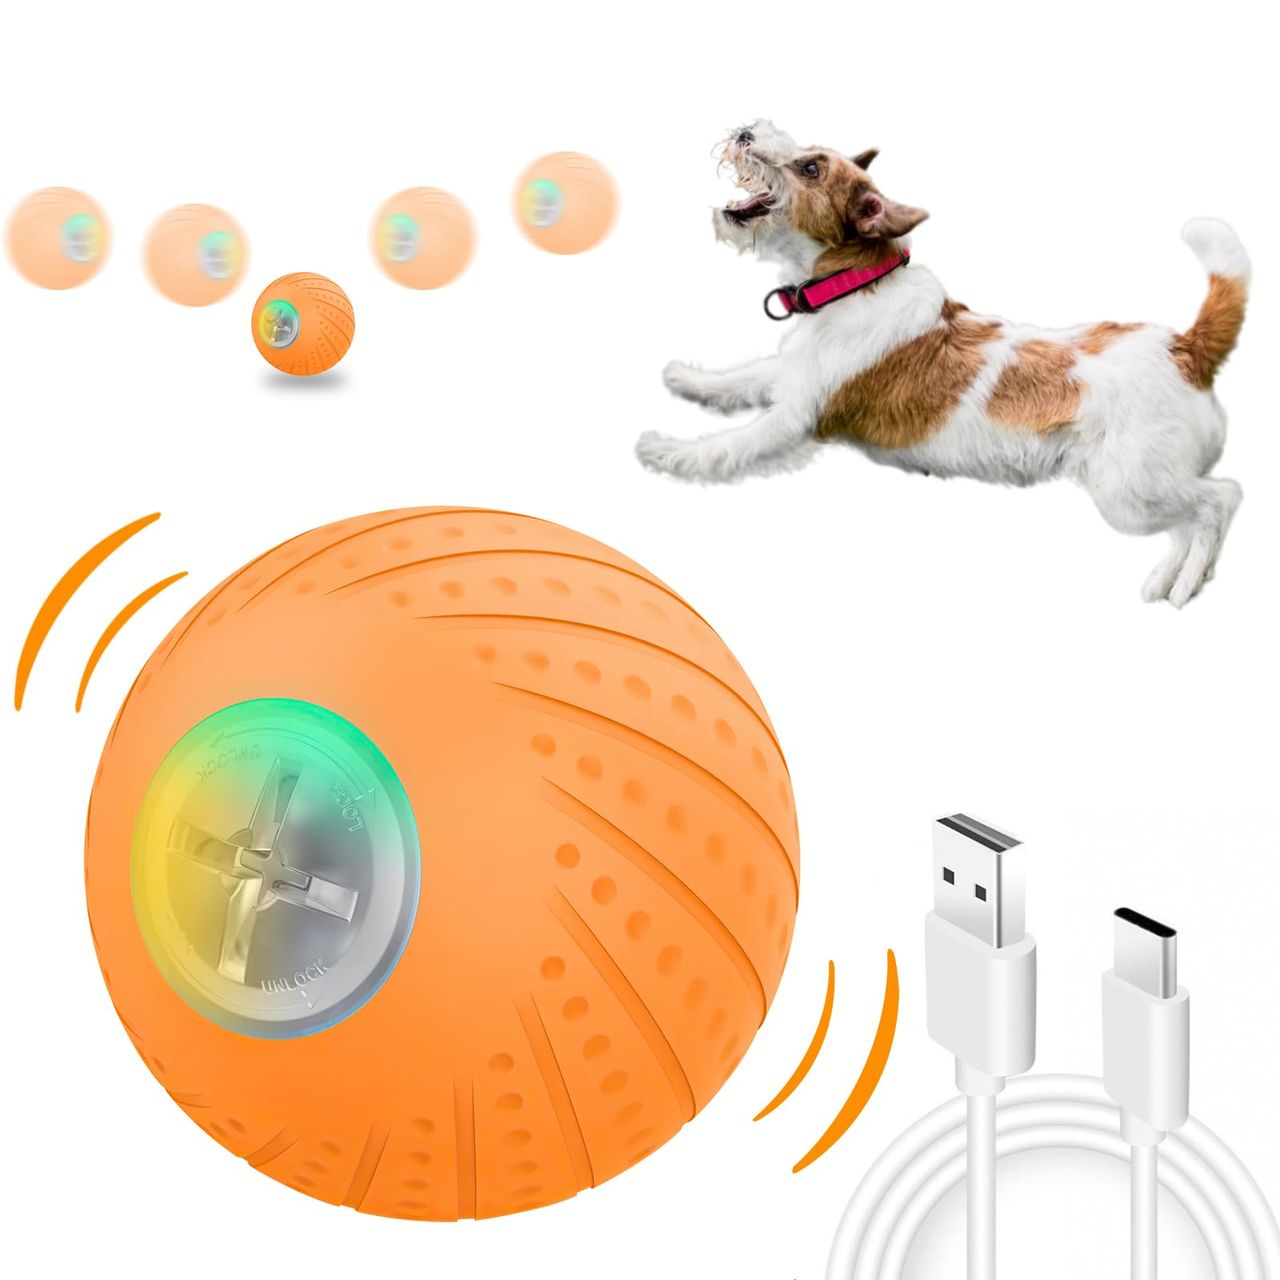 犬ボール 犬おもちゃ電動ボール 光るボール 自動弾む＋揺れ＋転がる 2つモード付き 自由に選び可能 天然ゴム素材 ストレス解消 運動不足対応 小型犬向け 訓練可能 Type-C充電